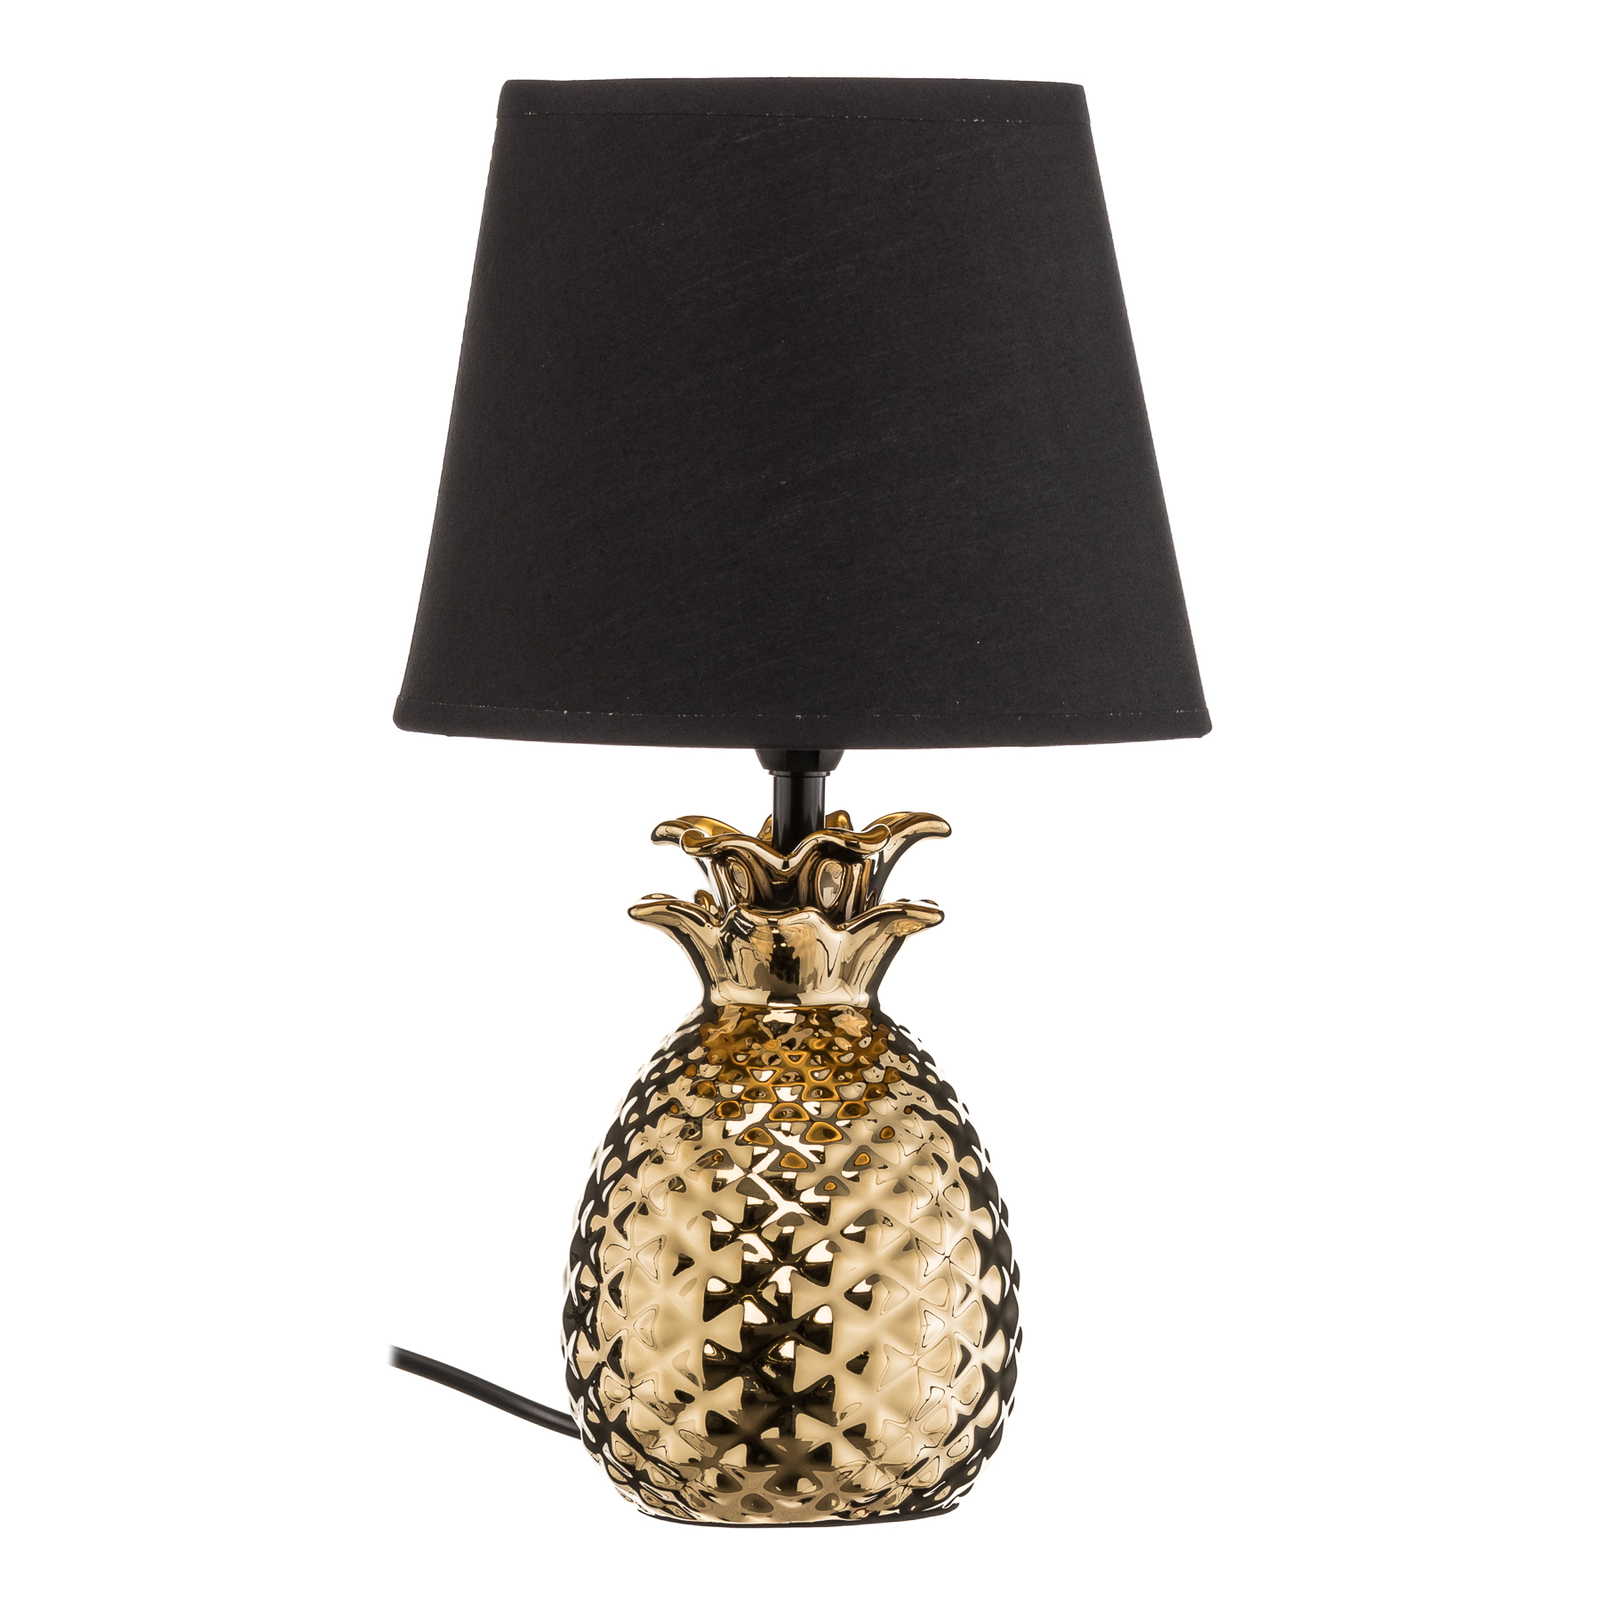 Keramická stolná lampa Pineapple čierno-zlatá